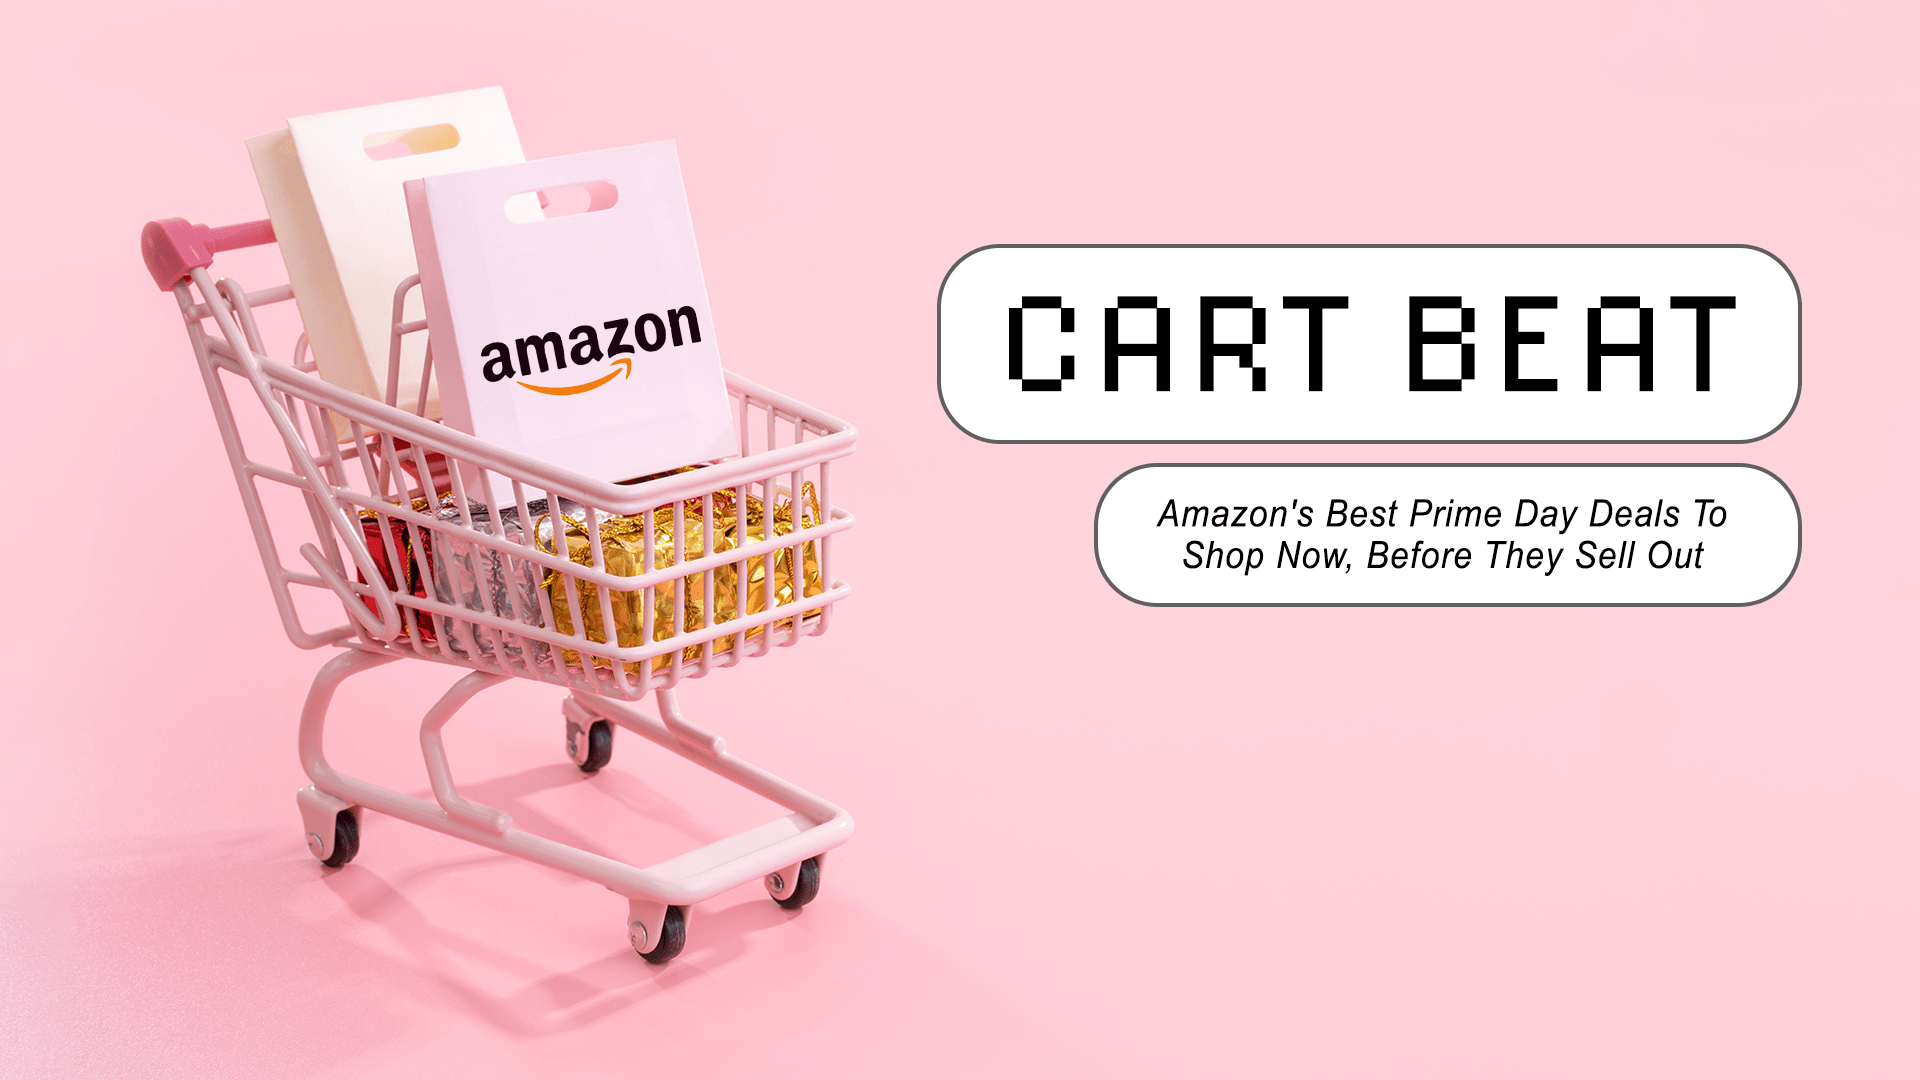 Amazon Prime-Mitgliedschaftsangebot im Wert von 2 $